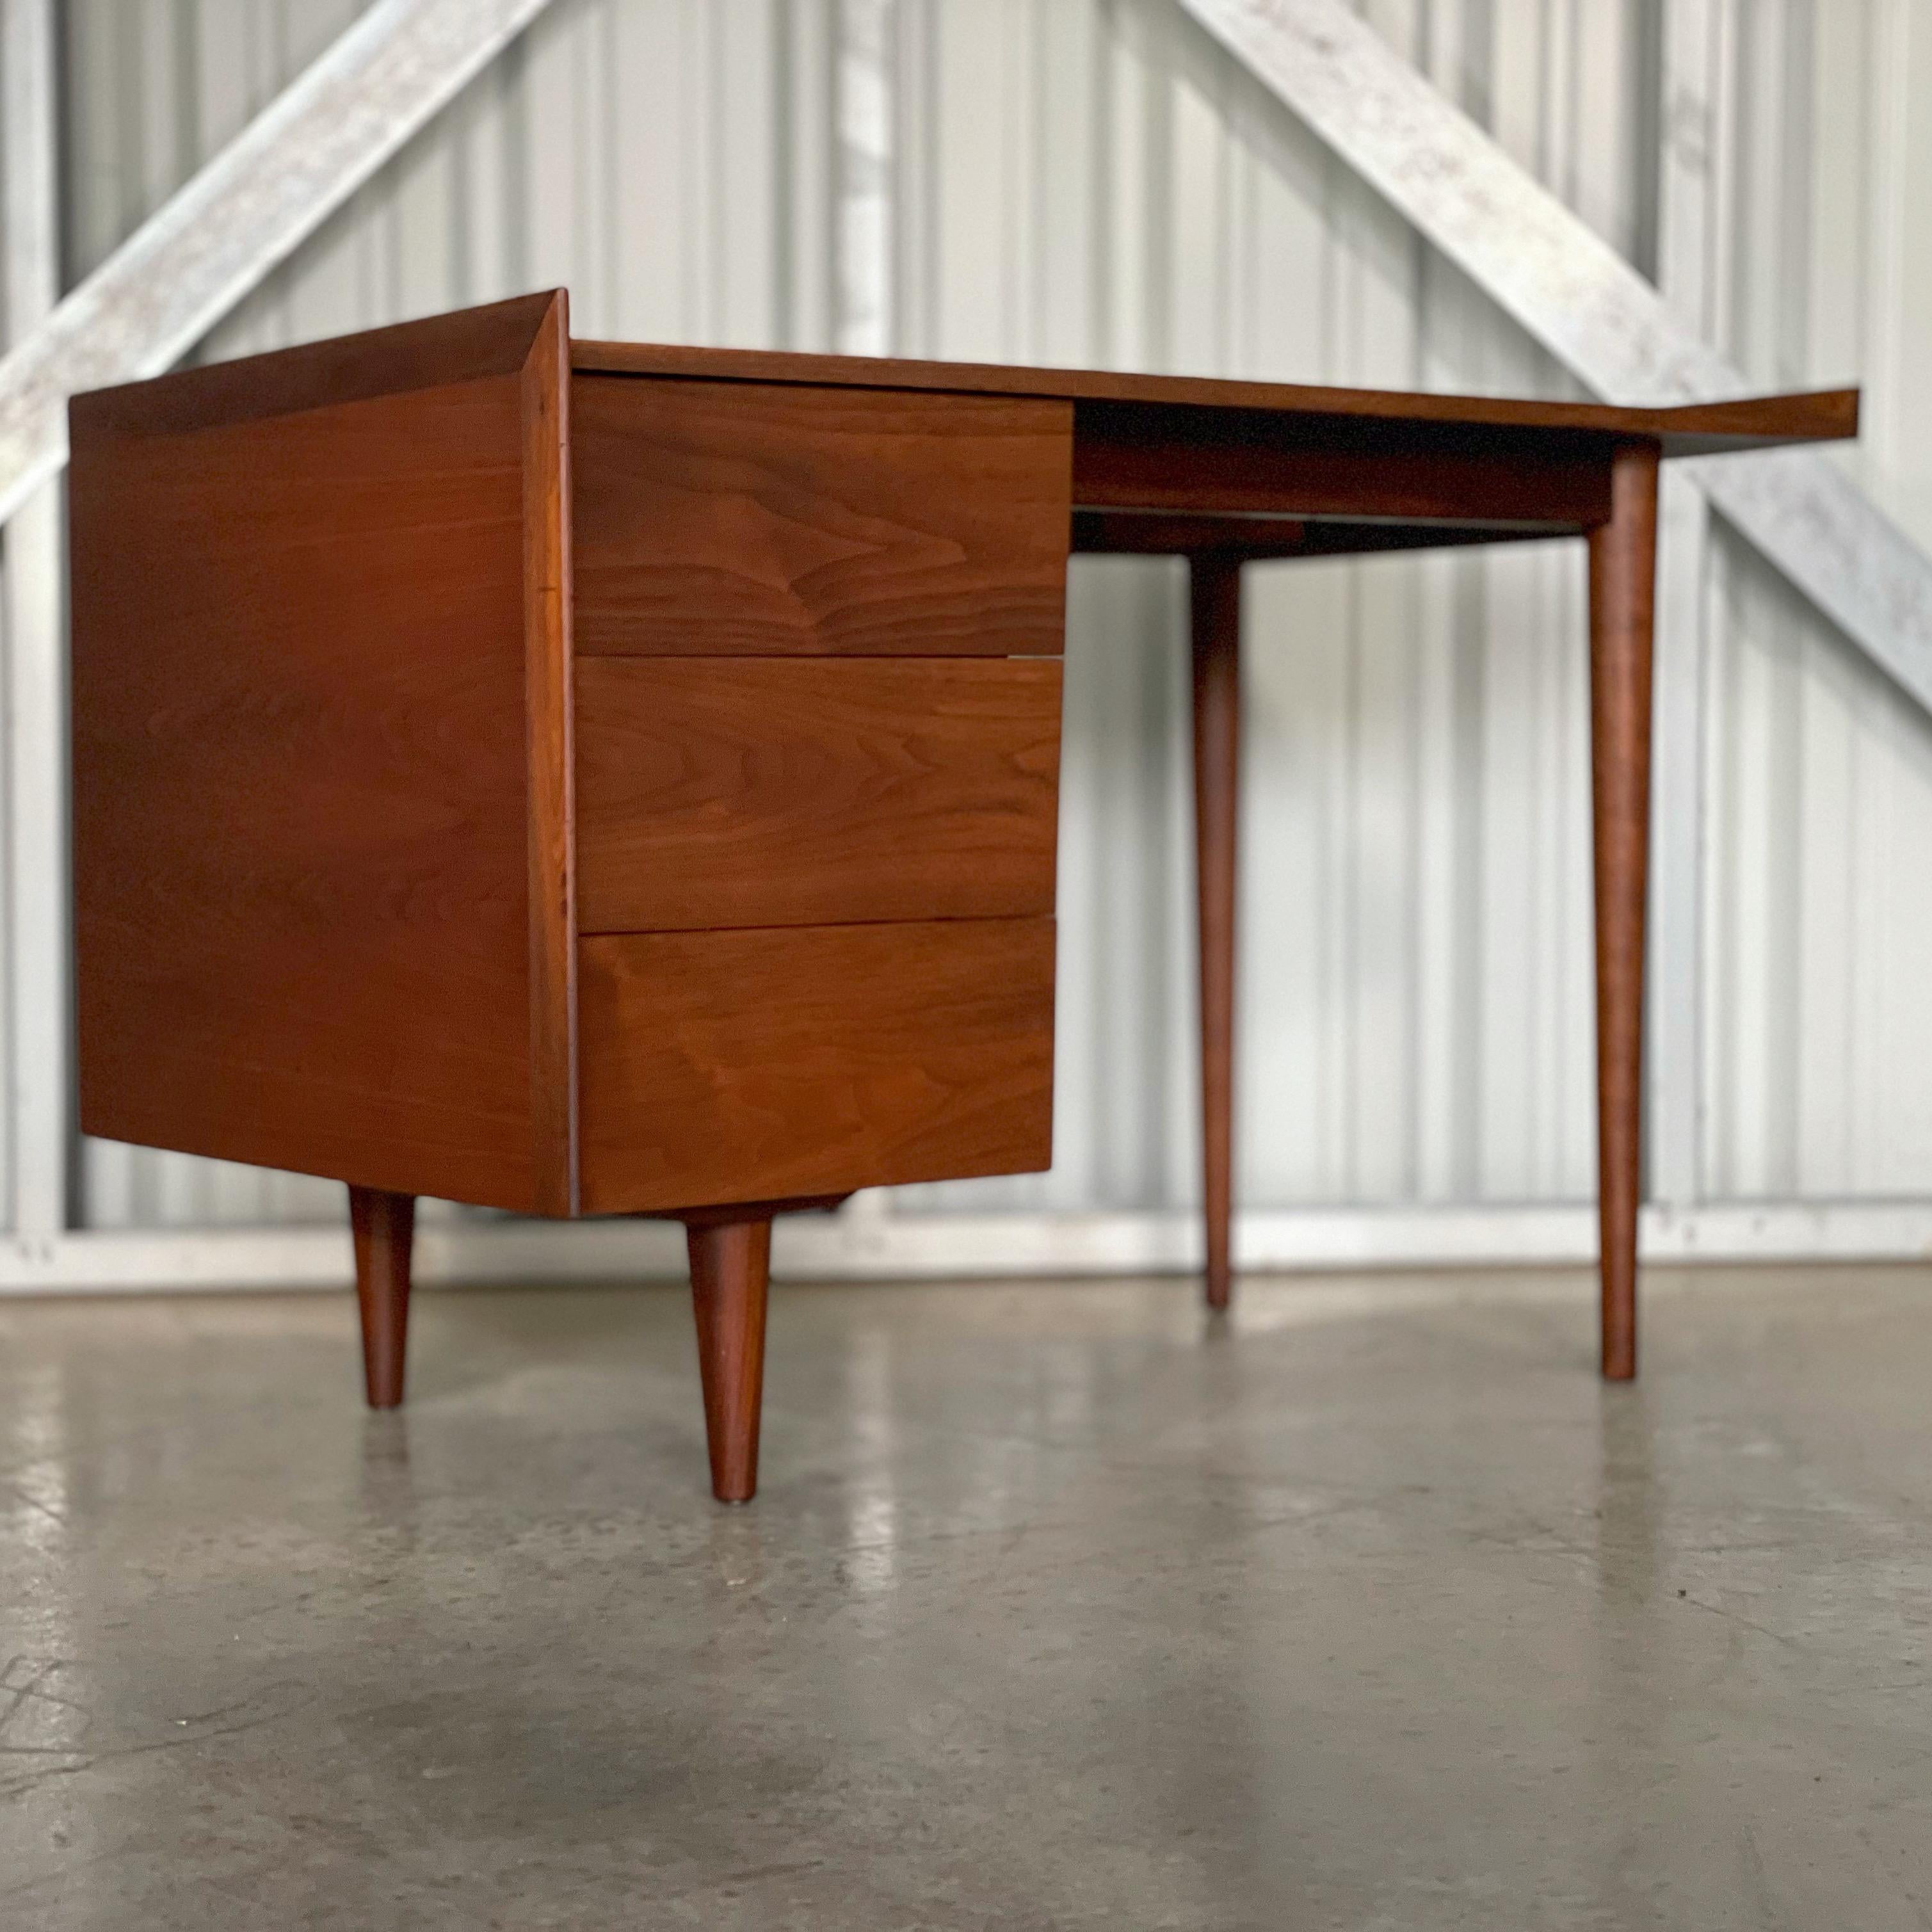 Mid-20th Century Midcentury Modern Desk by Jens Risom in Walnut